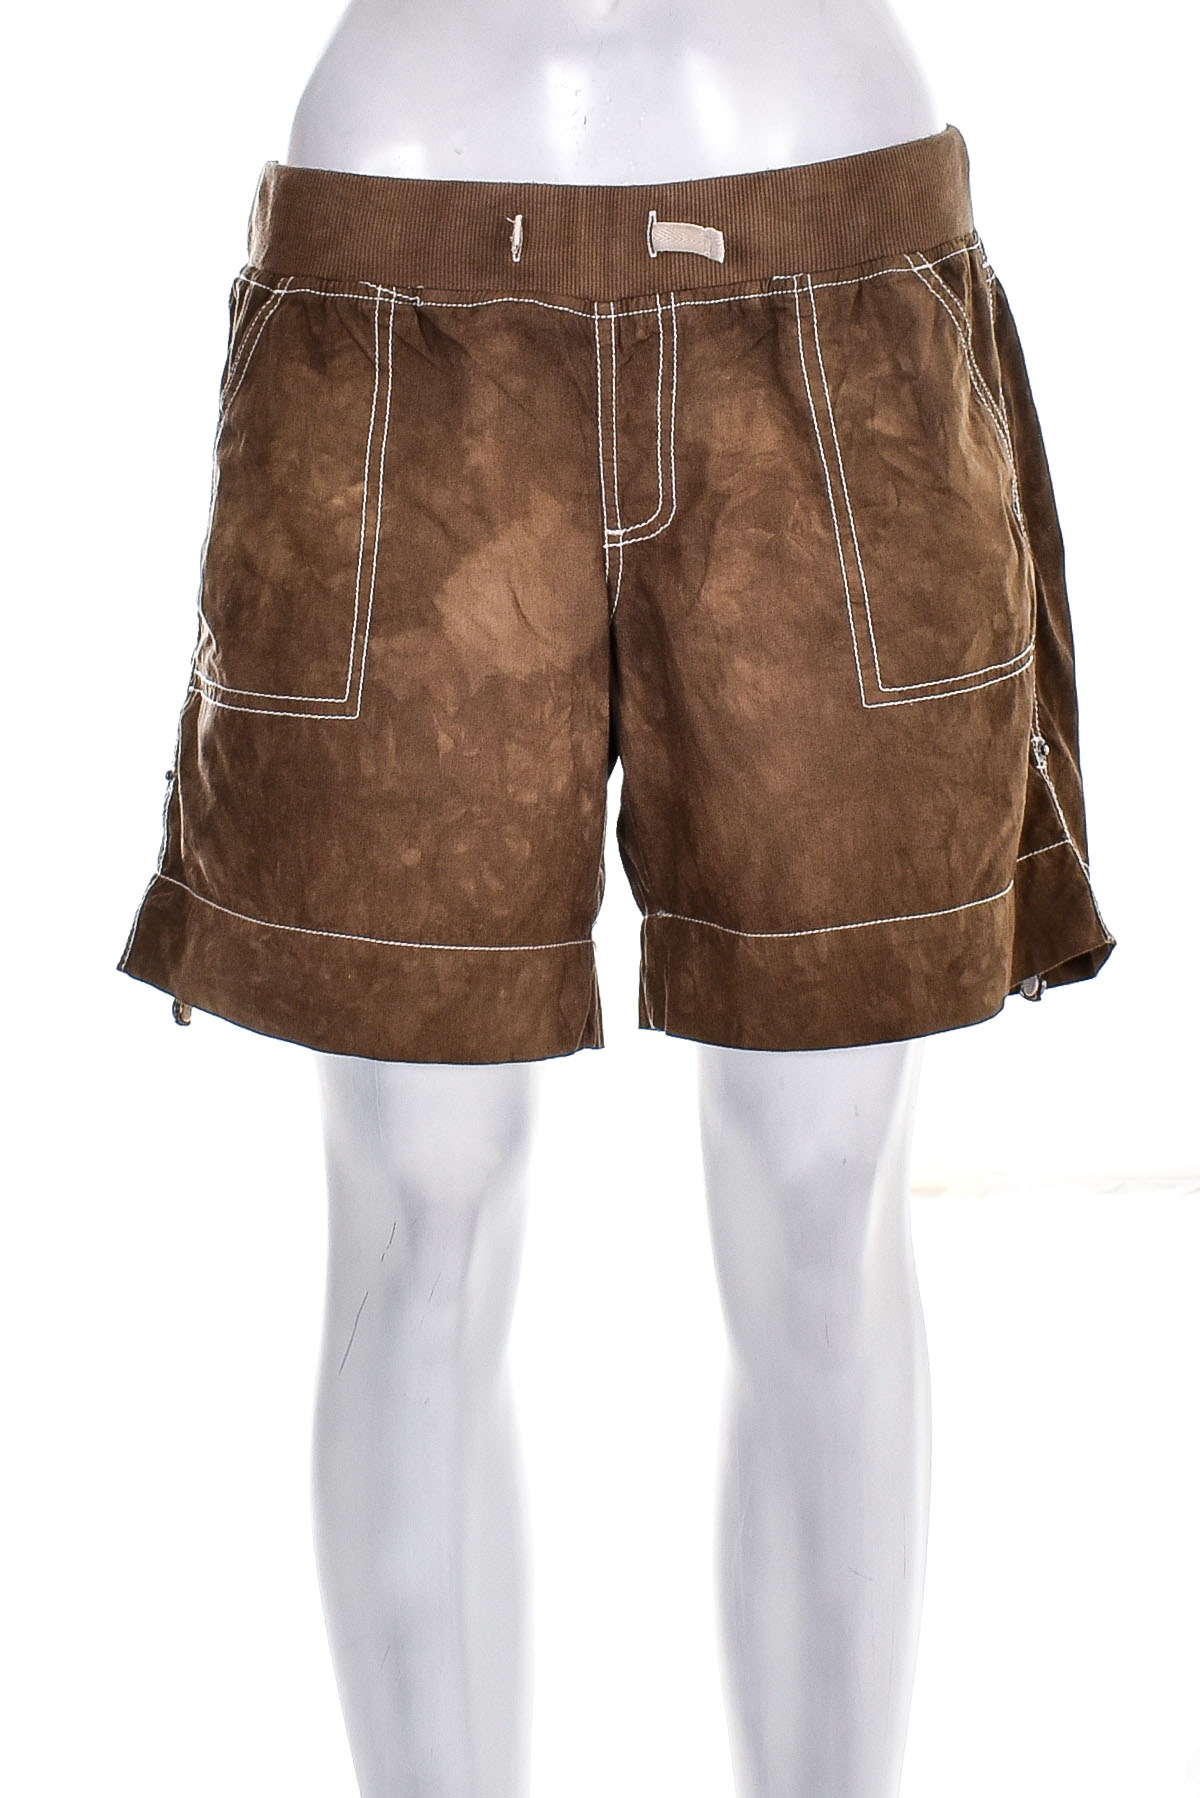 Krótkie spodnie damskie - Takko Fashion - 0